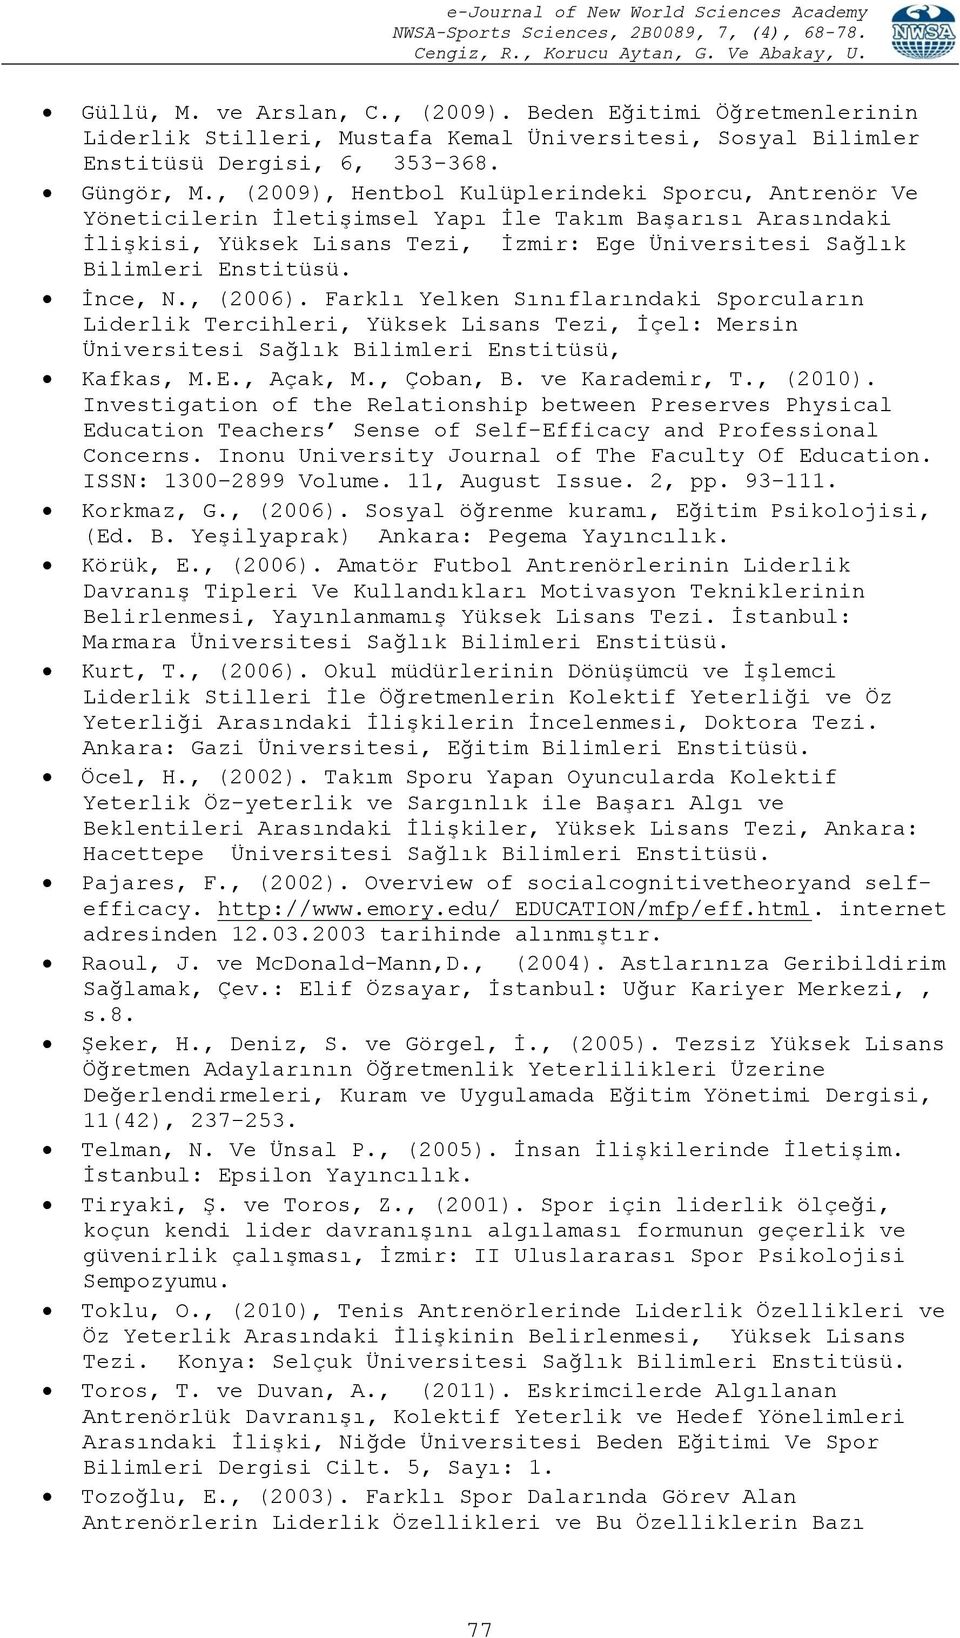 İnce, N., (2006). Farklı Yelken Sınıflarındaki Sporcuların Liderlik Tercihleri, Yüksek Lisans Tezi, İçel: Mersin Üniversitesi Sağlık Bilimleri Enstitüsü, Kafkas, M.E., Açak, M., Çoban, B.